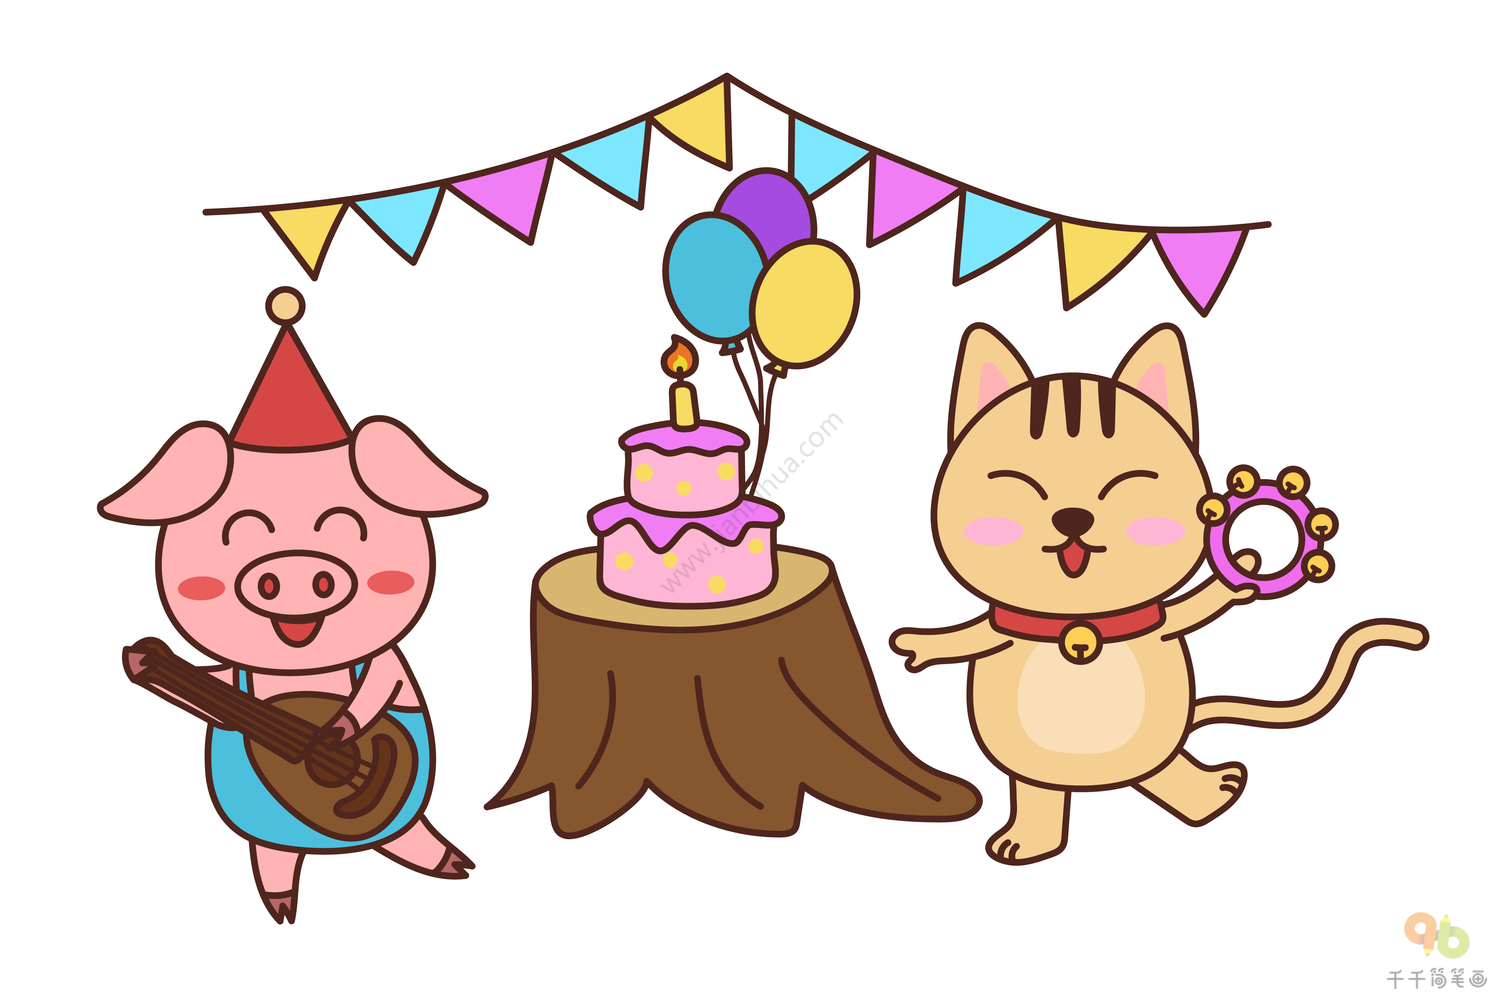 与蛋糕的小猫 向量例证. 插画 包括有 装饰, 蛋糕, 茴香, 生日, 小猫, 背包徒步旅行者, 问候, 设计 - 56356583